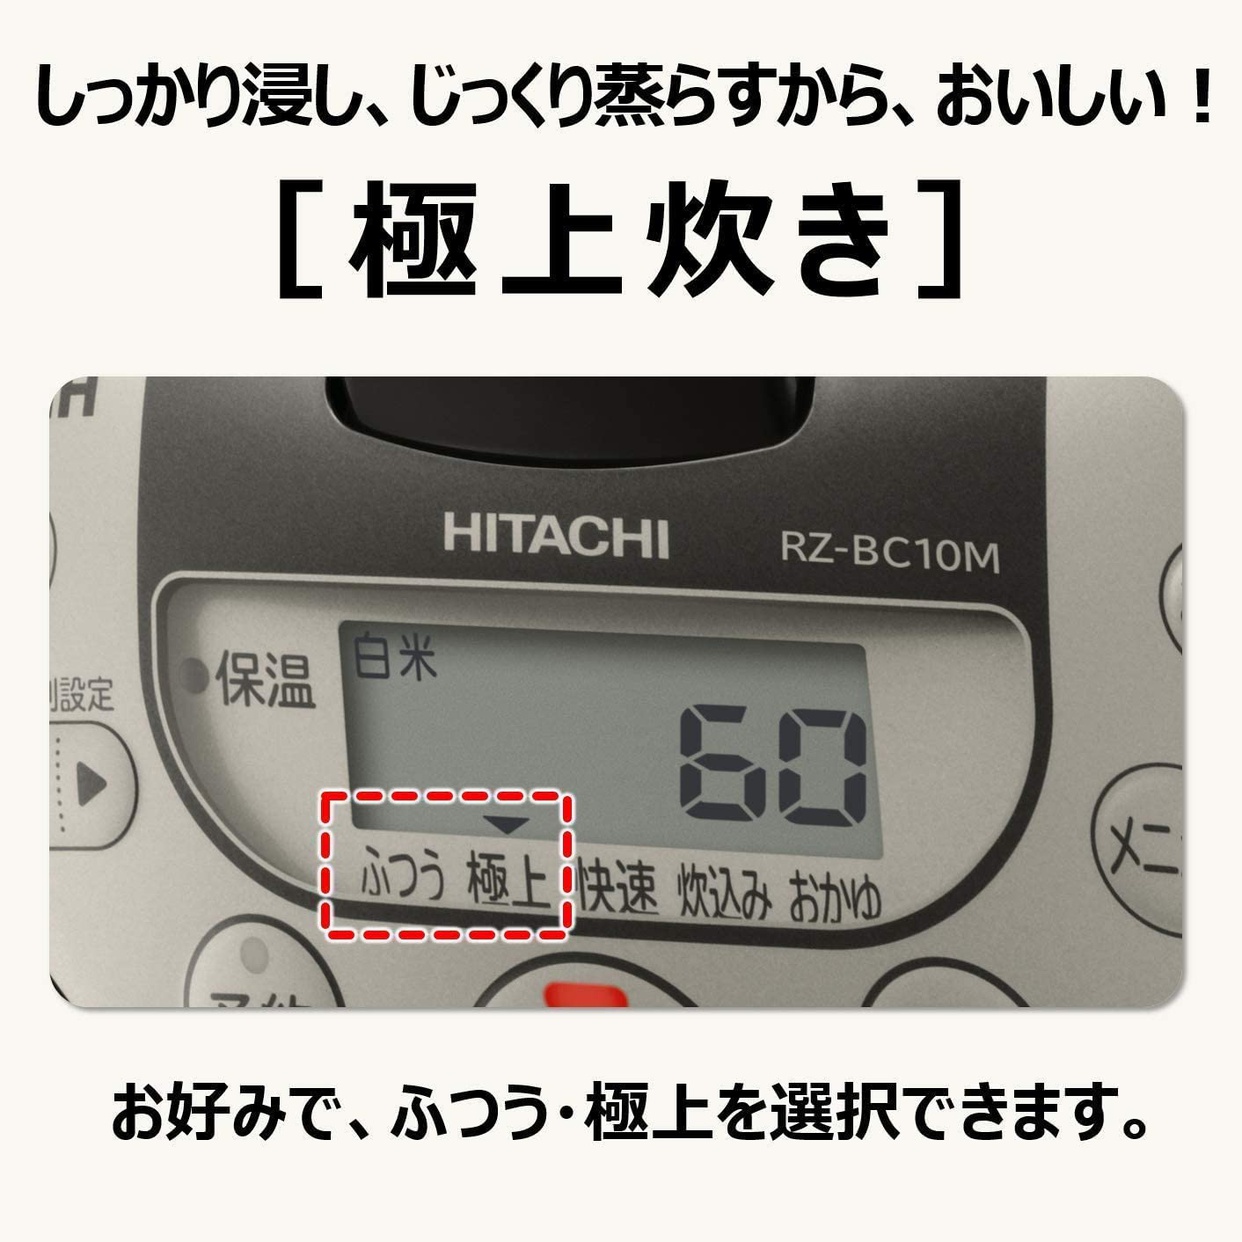 日立(HITACHI) IH炊飯ジャー RZ-BC10Mの商品画像4 